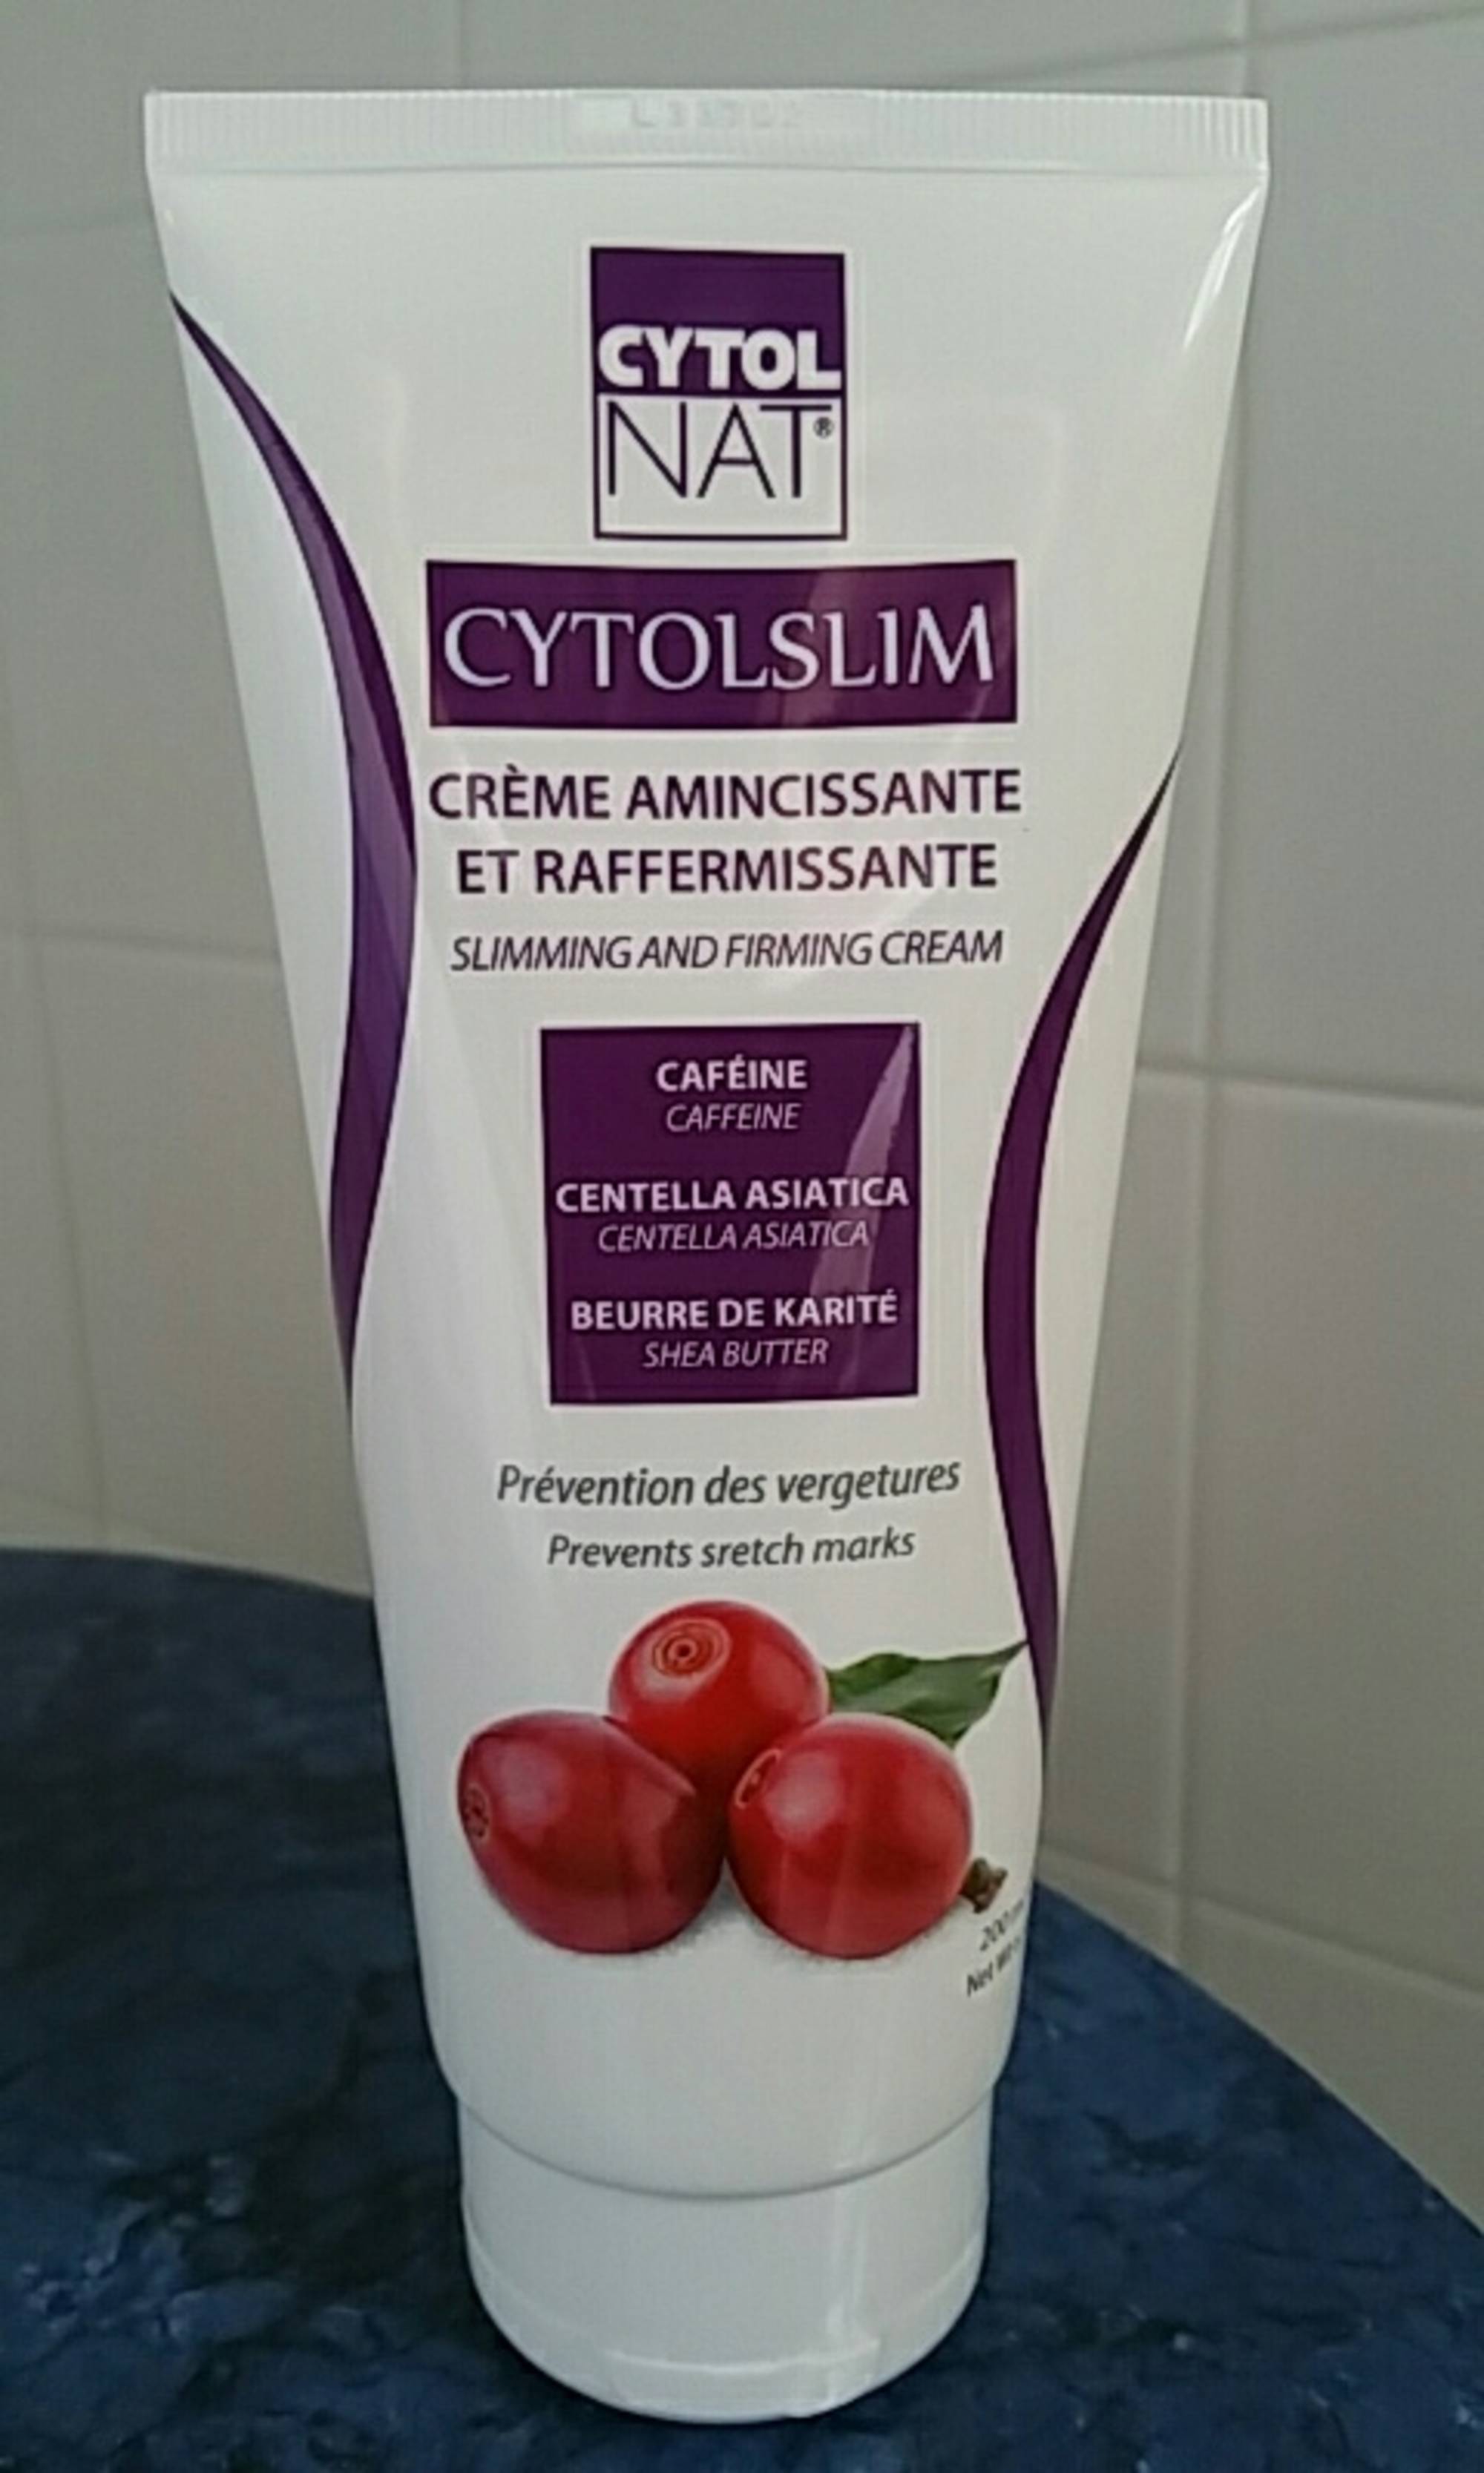 CYTOLNAT - Cytolslim - Crème amincissante et raffermissante